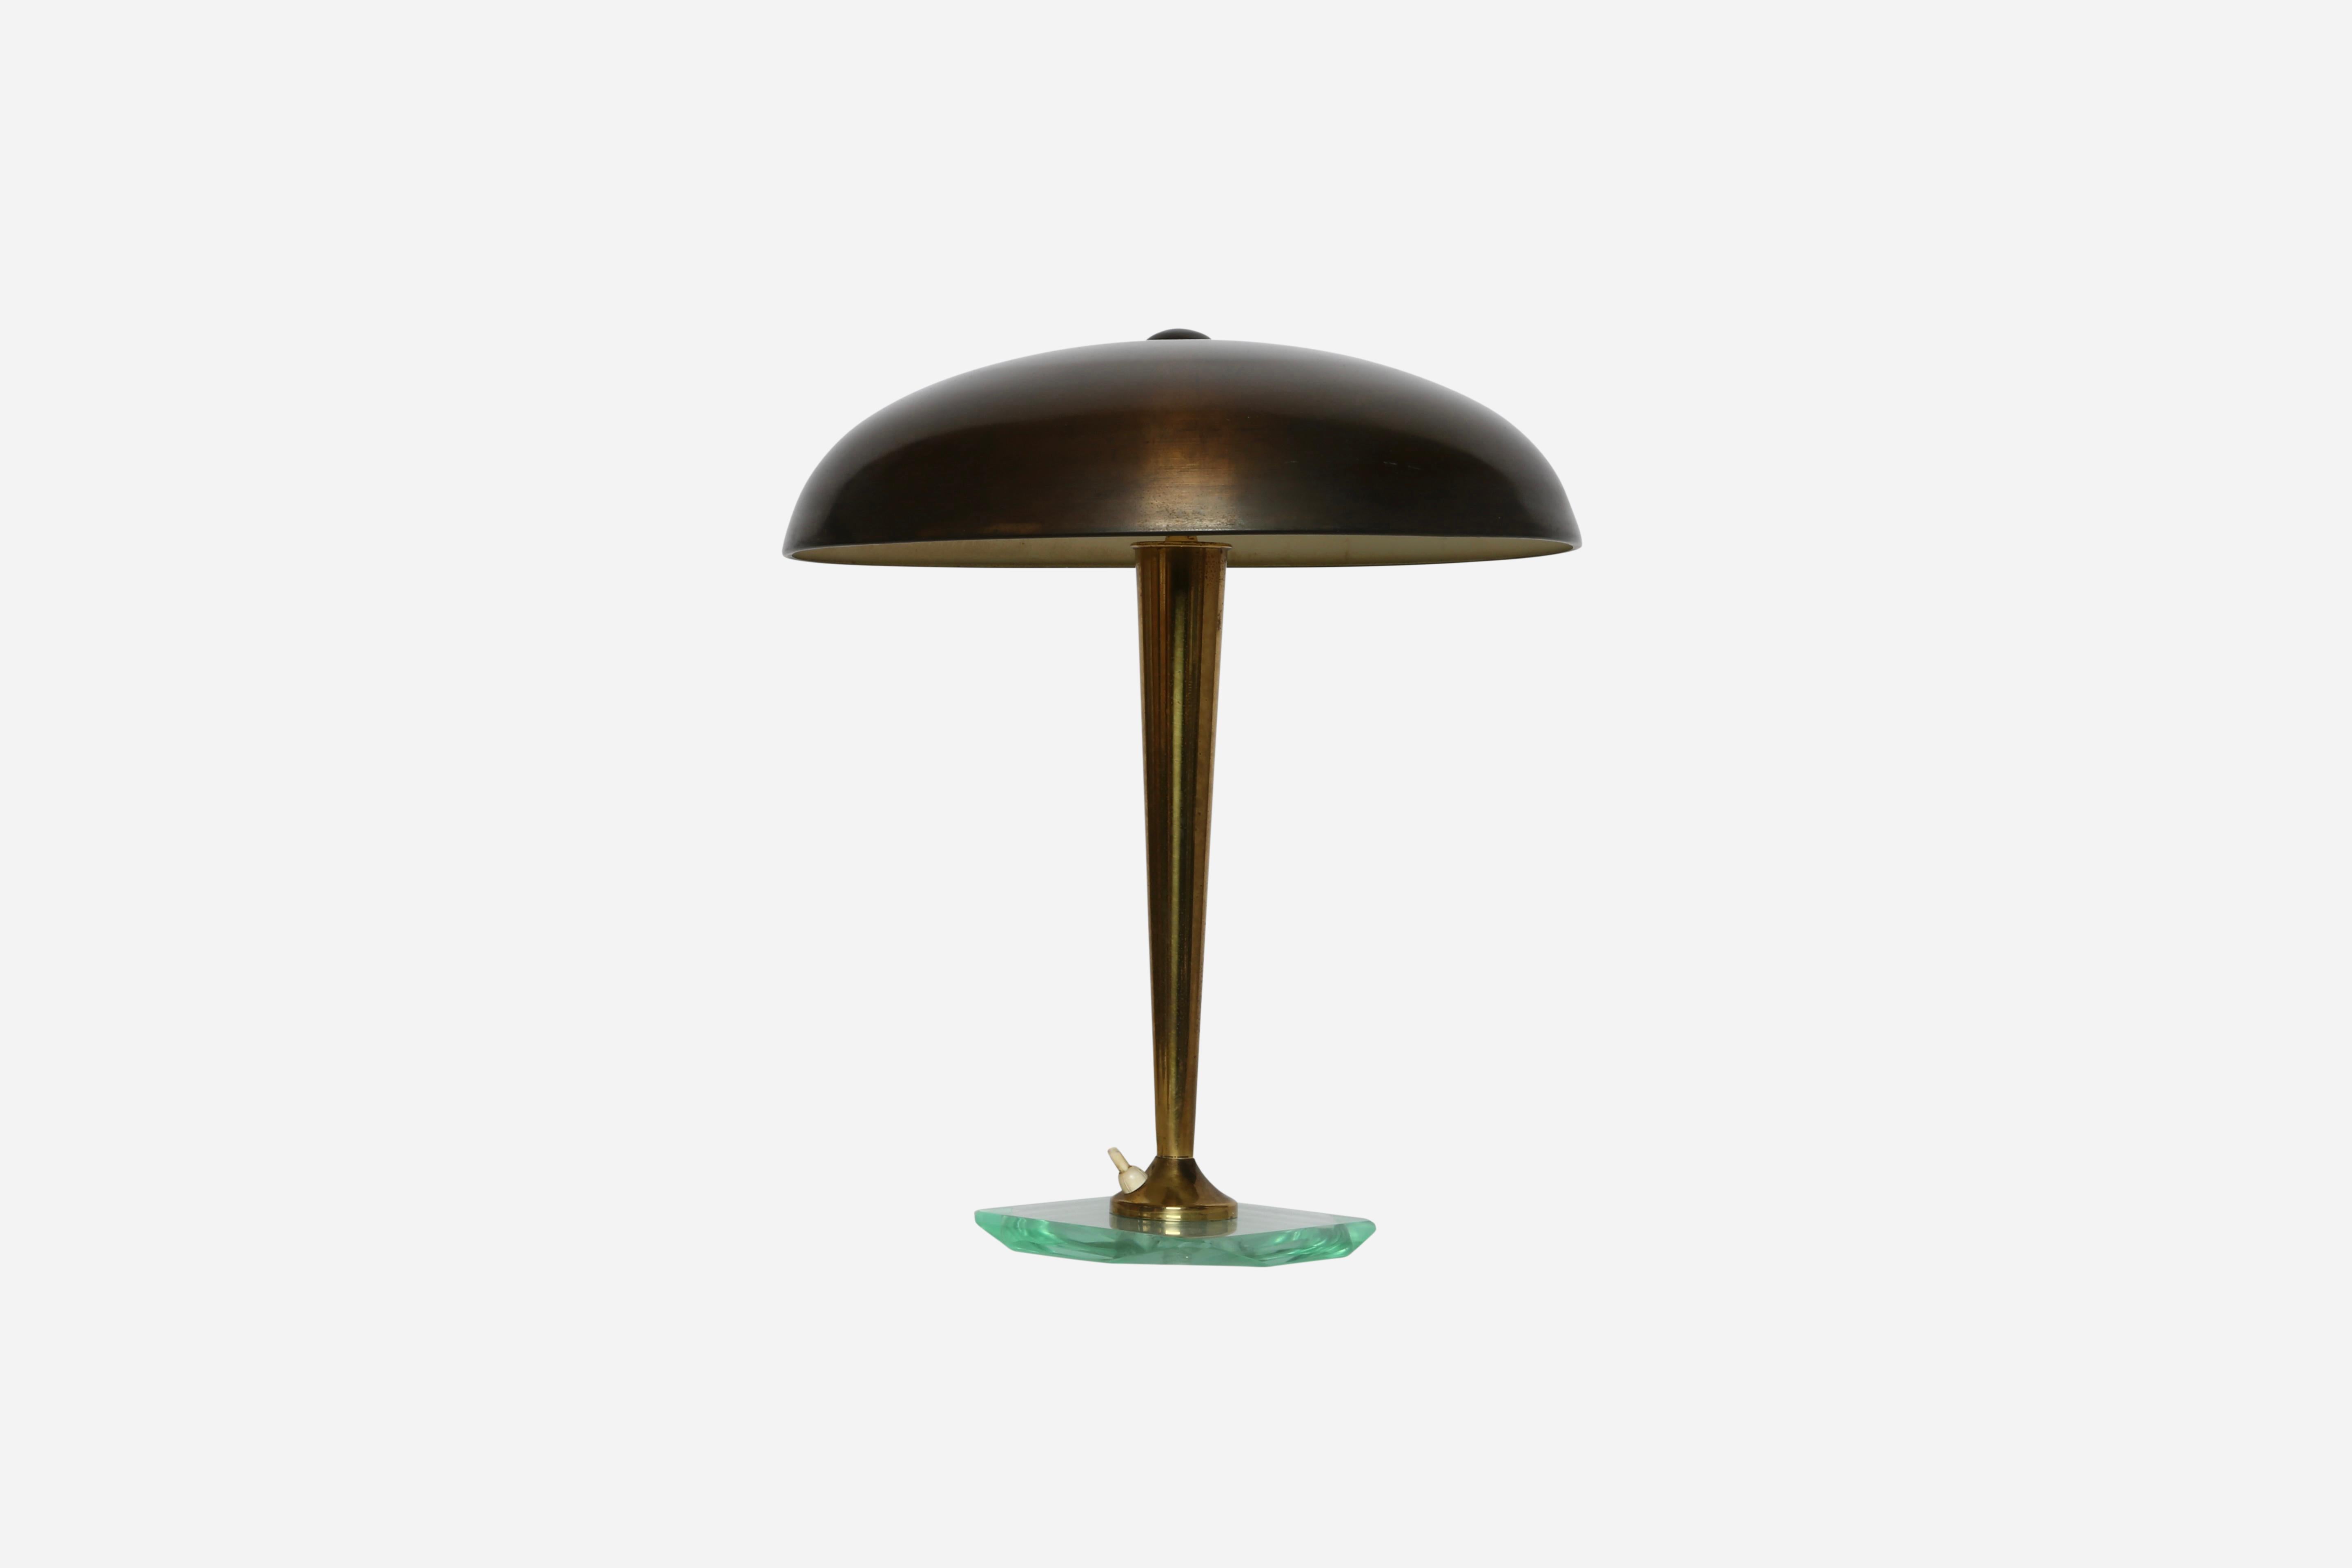 Lampe de table Pietro Chiesa pour Fontana Arte
Conçue et fabriquée en Italie dans les années 1960
Abat-jour en laiton patiné, base en verre.
2 prises candélabres
Recâblage américain gratuit sur demande.

Nous sommes fiers de redonner aux luminaires